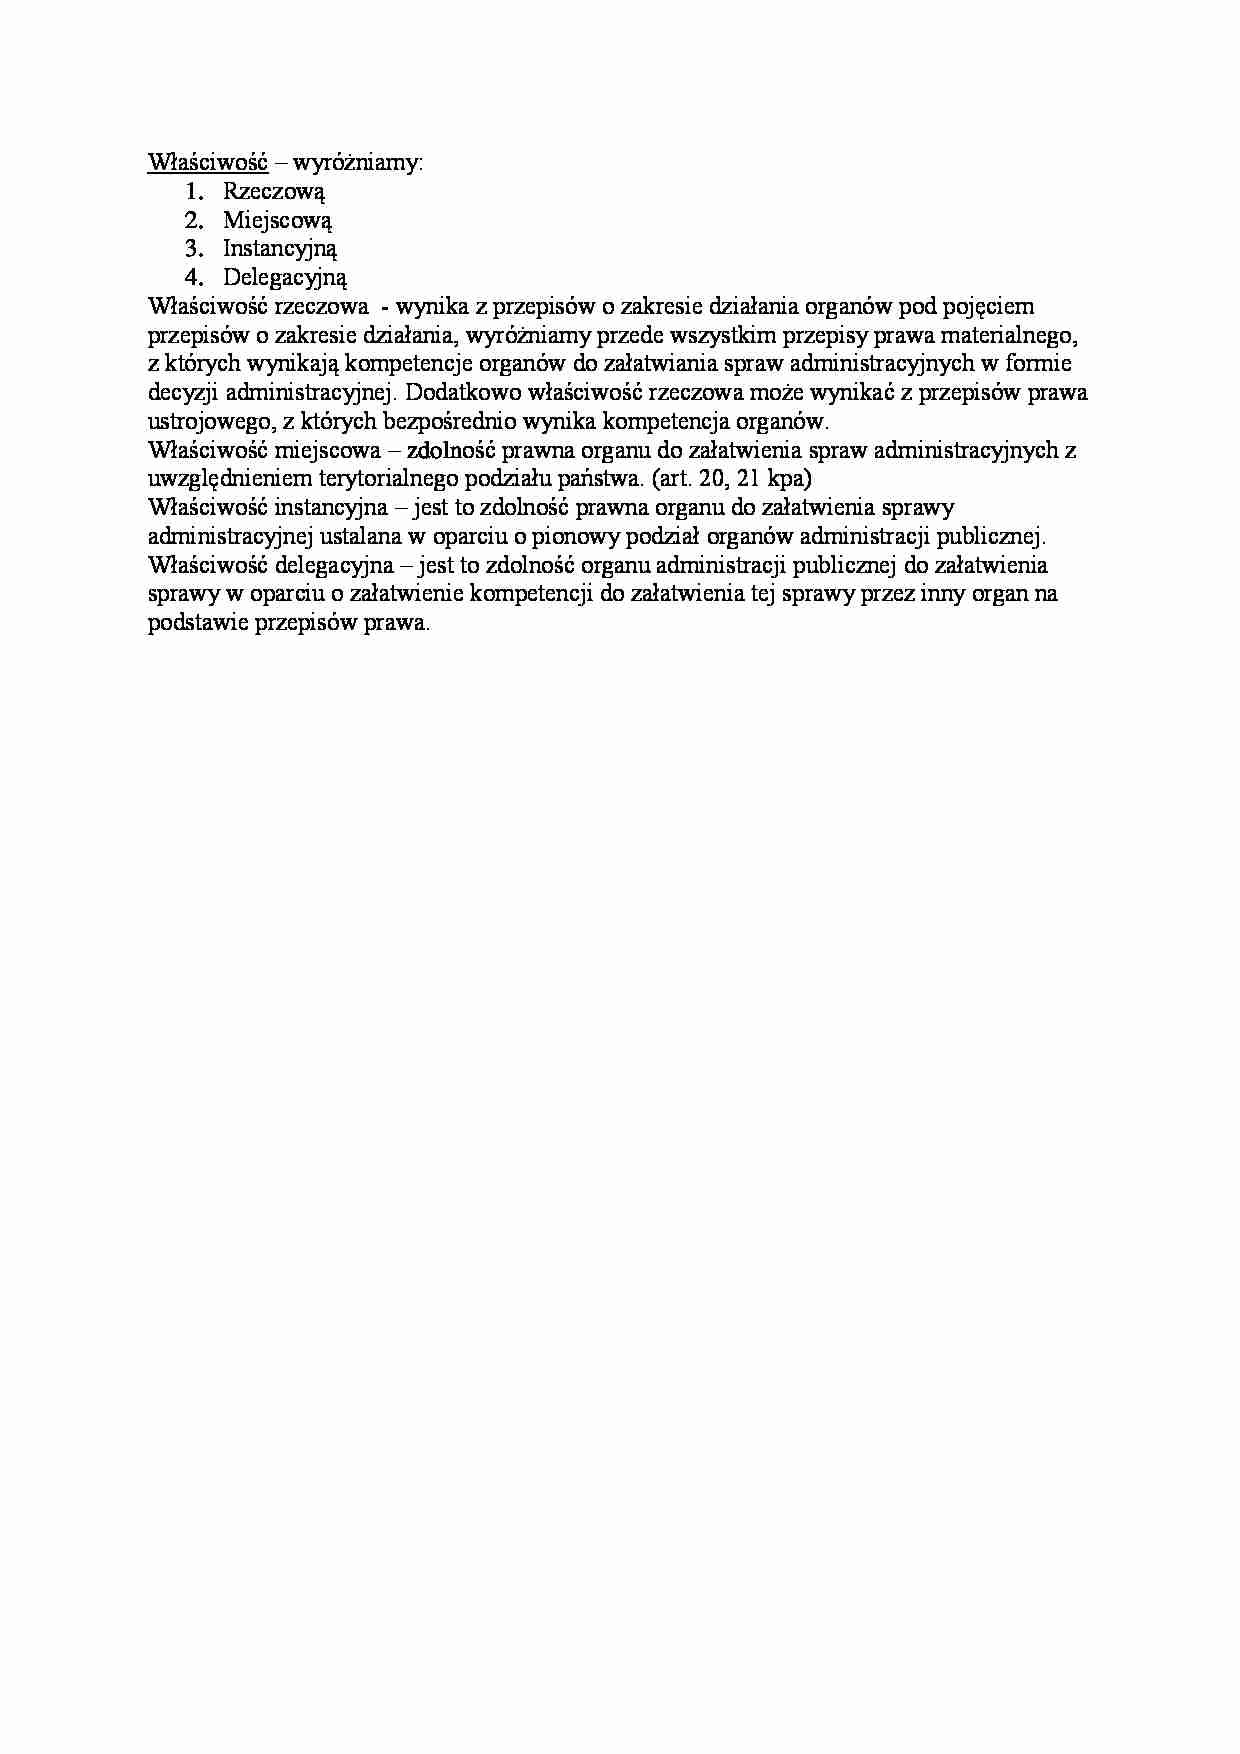 Właściwość organów administracyjnych-opracowanie - strona 1